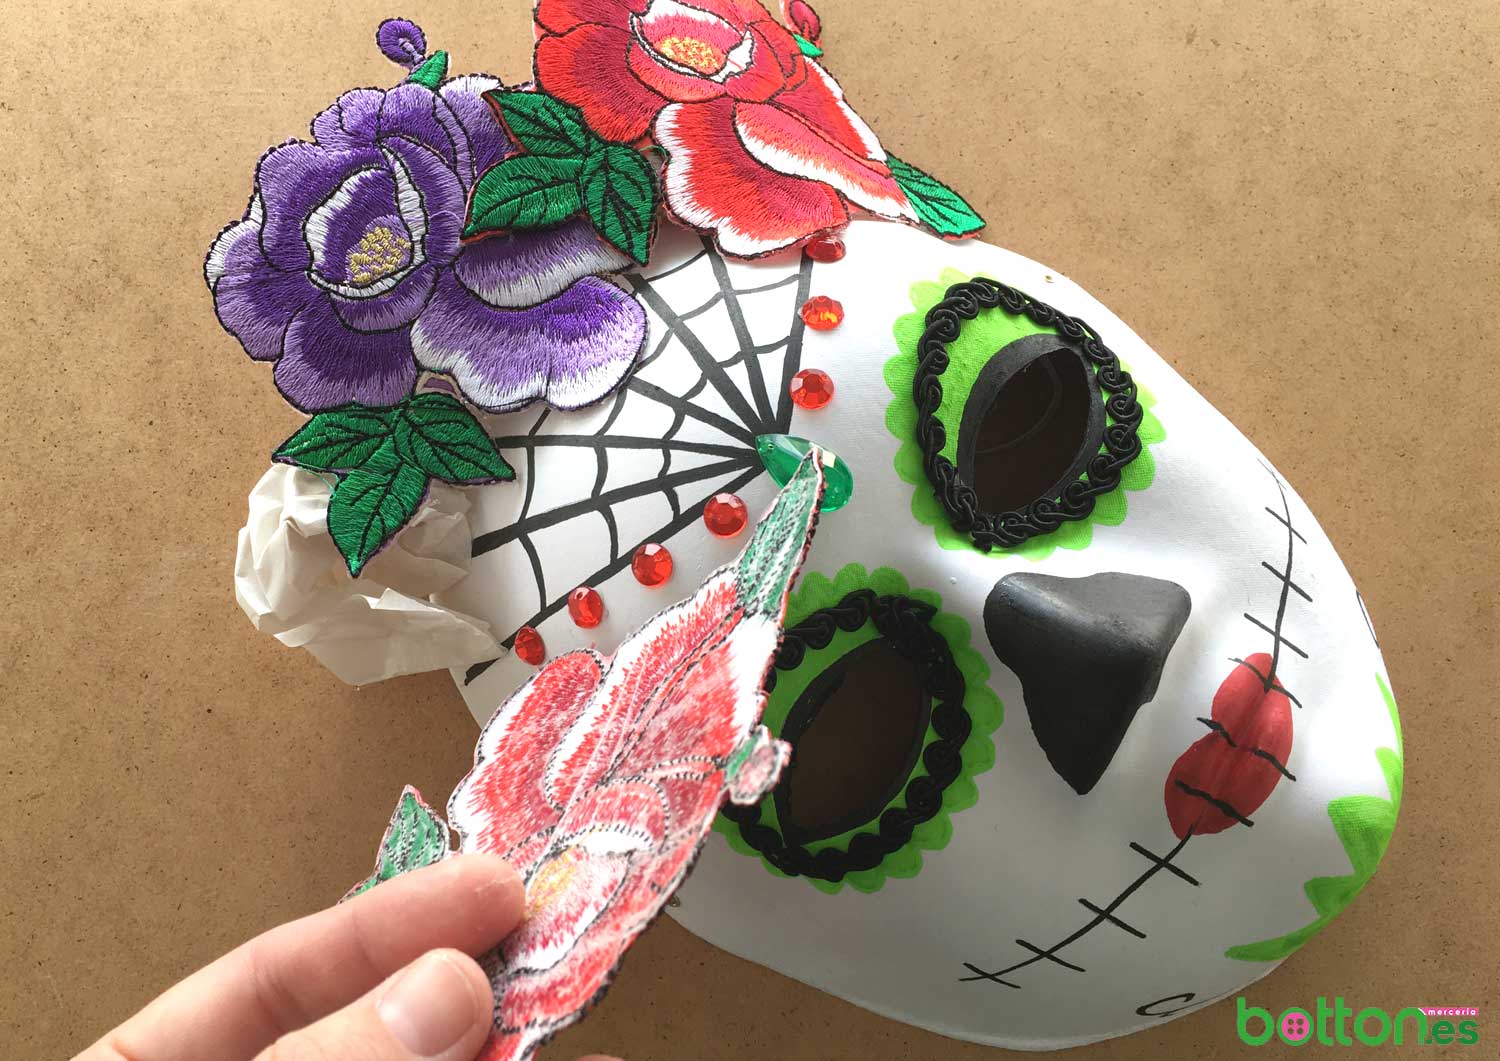 DIY: máscara catrina mexicana para este Halloween